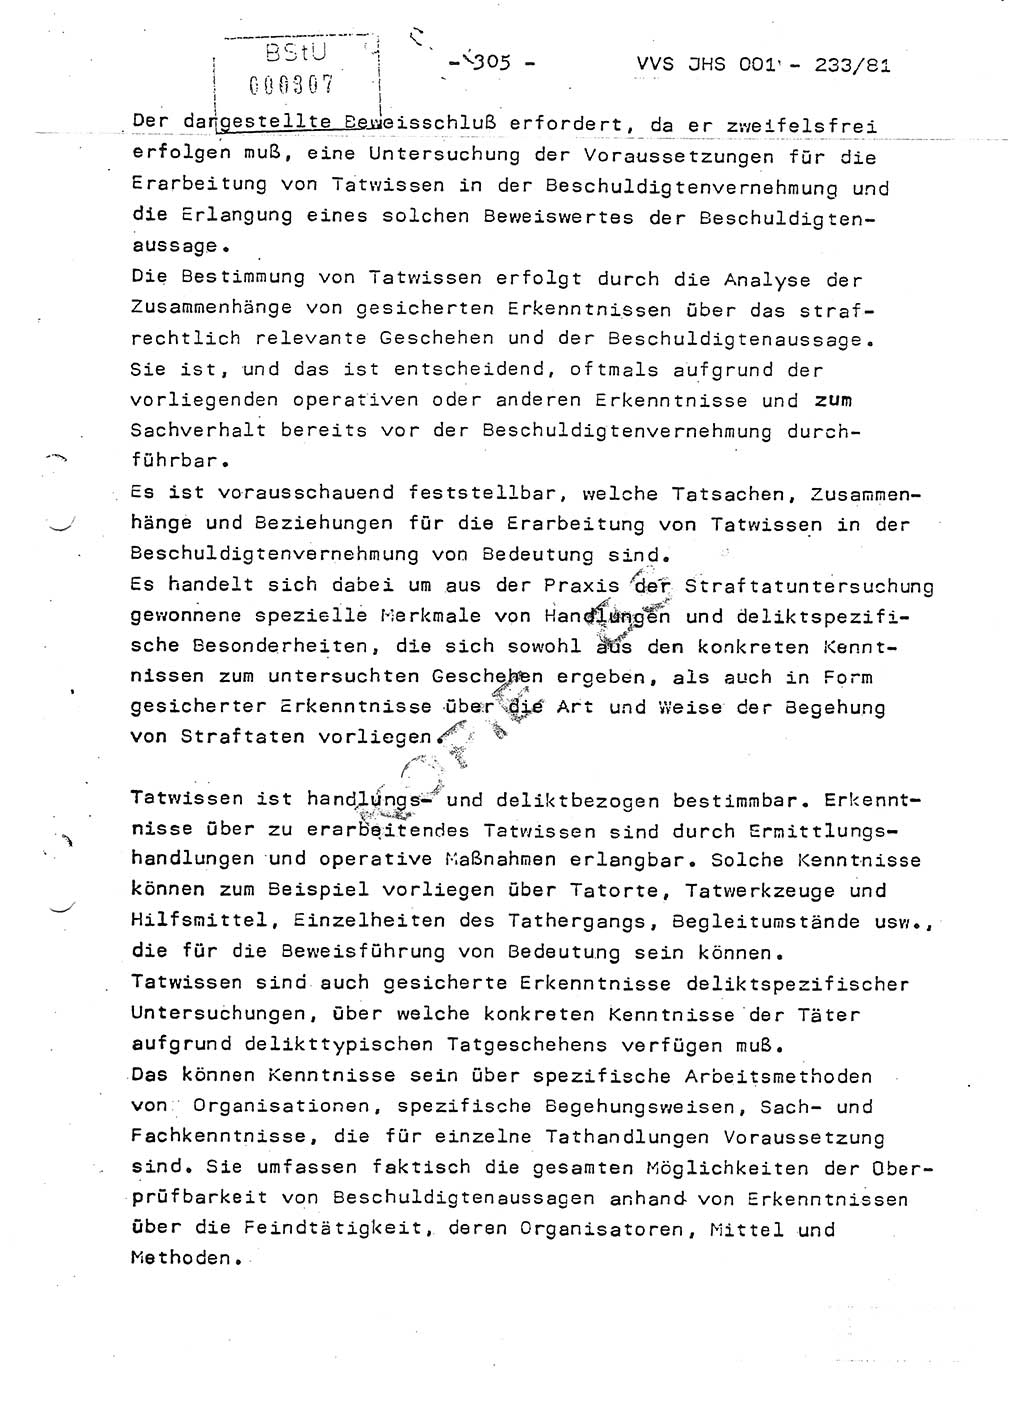 Dissertation Oberstleutnant Horst Zank (JHS), Oberstleutnant Dr. Karl-Heinz Knoblauch (JHS), Oberstleutnant Gustav-Adolf Kowalewski (HA Ⅸ), Oberstleutnant Wolfgang Plötner (HA Ⅸ), Ministerium für Staatssicherheit (MfS) [Deutsche Demokratische Republik (DDR)], Juristische Hochschule (JHS), Vertrauliche Verschlußsache (VVS) o001-233/81, Potsdam 1981, Blatt 305 (Diss. MfS DDR JHS VVS o001-233/81 1981, Bl. 305)